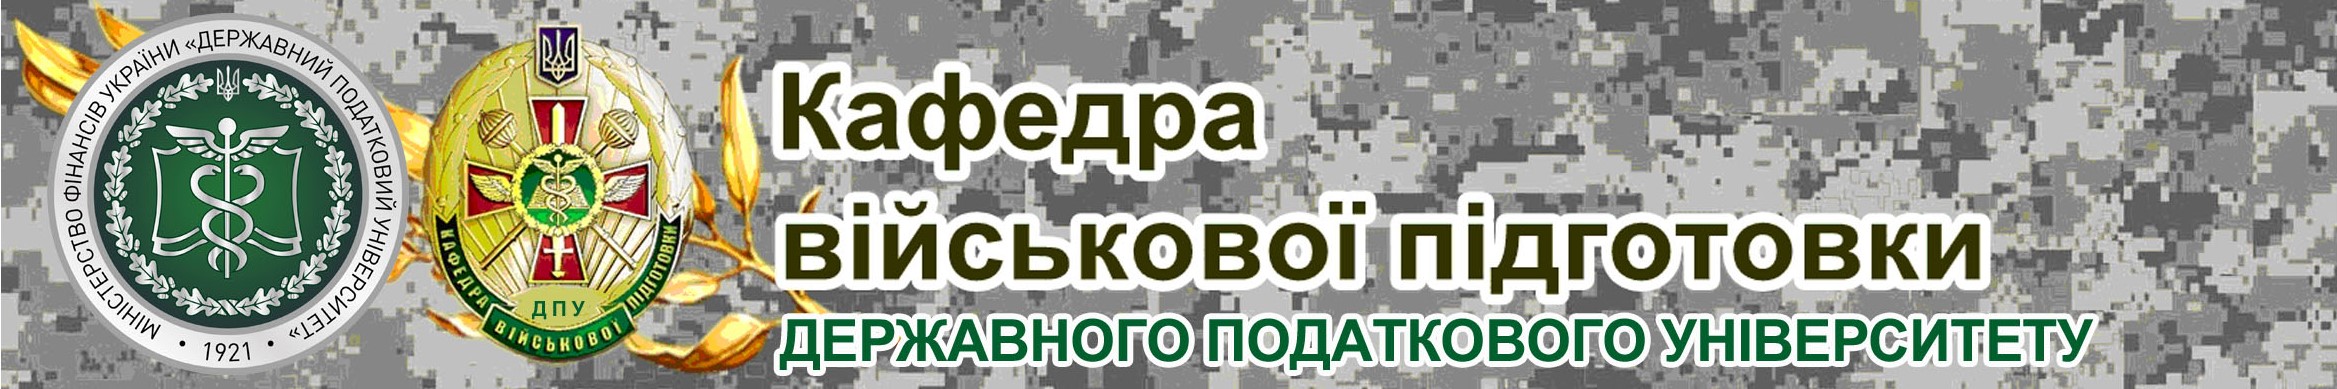 Кафедра військової підготовки Державного податкового університету запрошує на навчання!